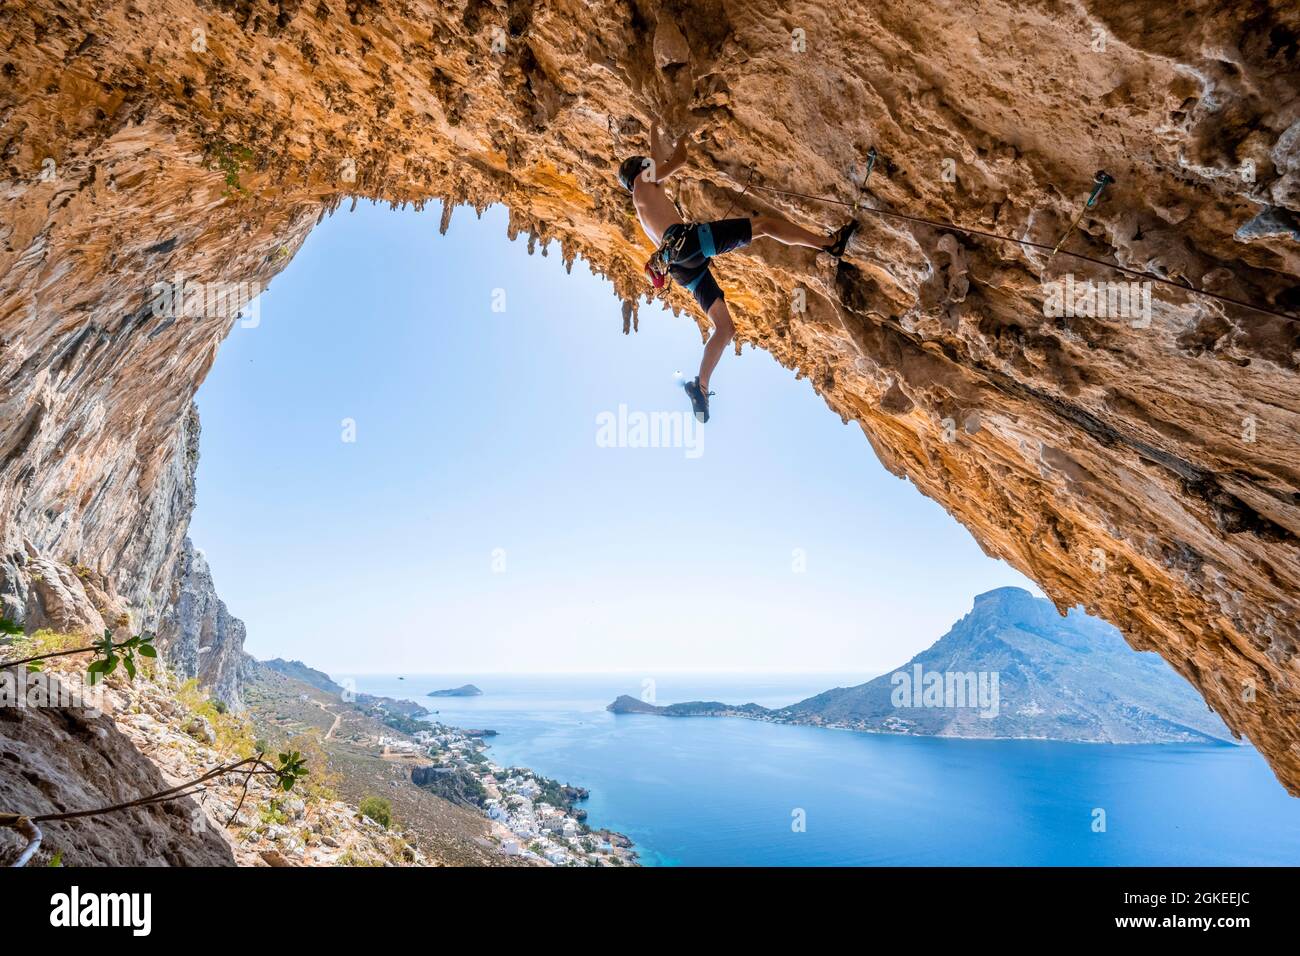 Gran Grotta, Armeos sector, escalada en plomo, escalada deportiva, Kalymnos, Dodecaneso, Grecia Foto de stock